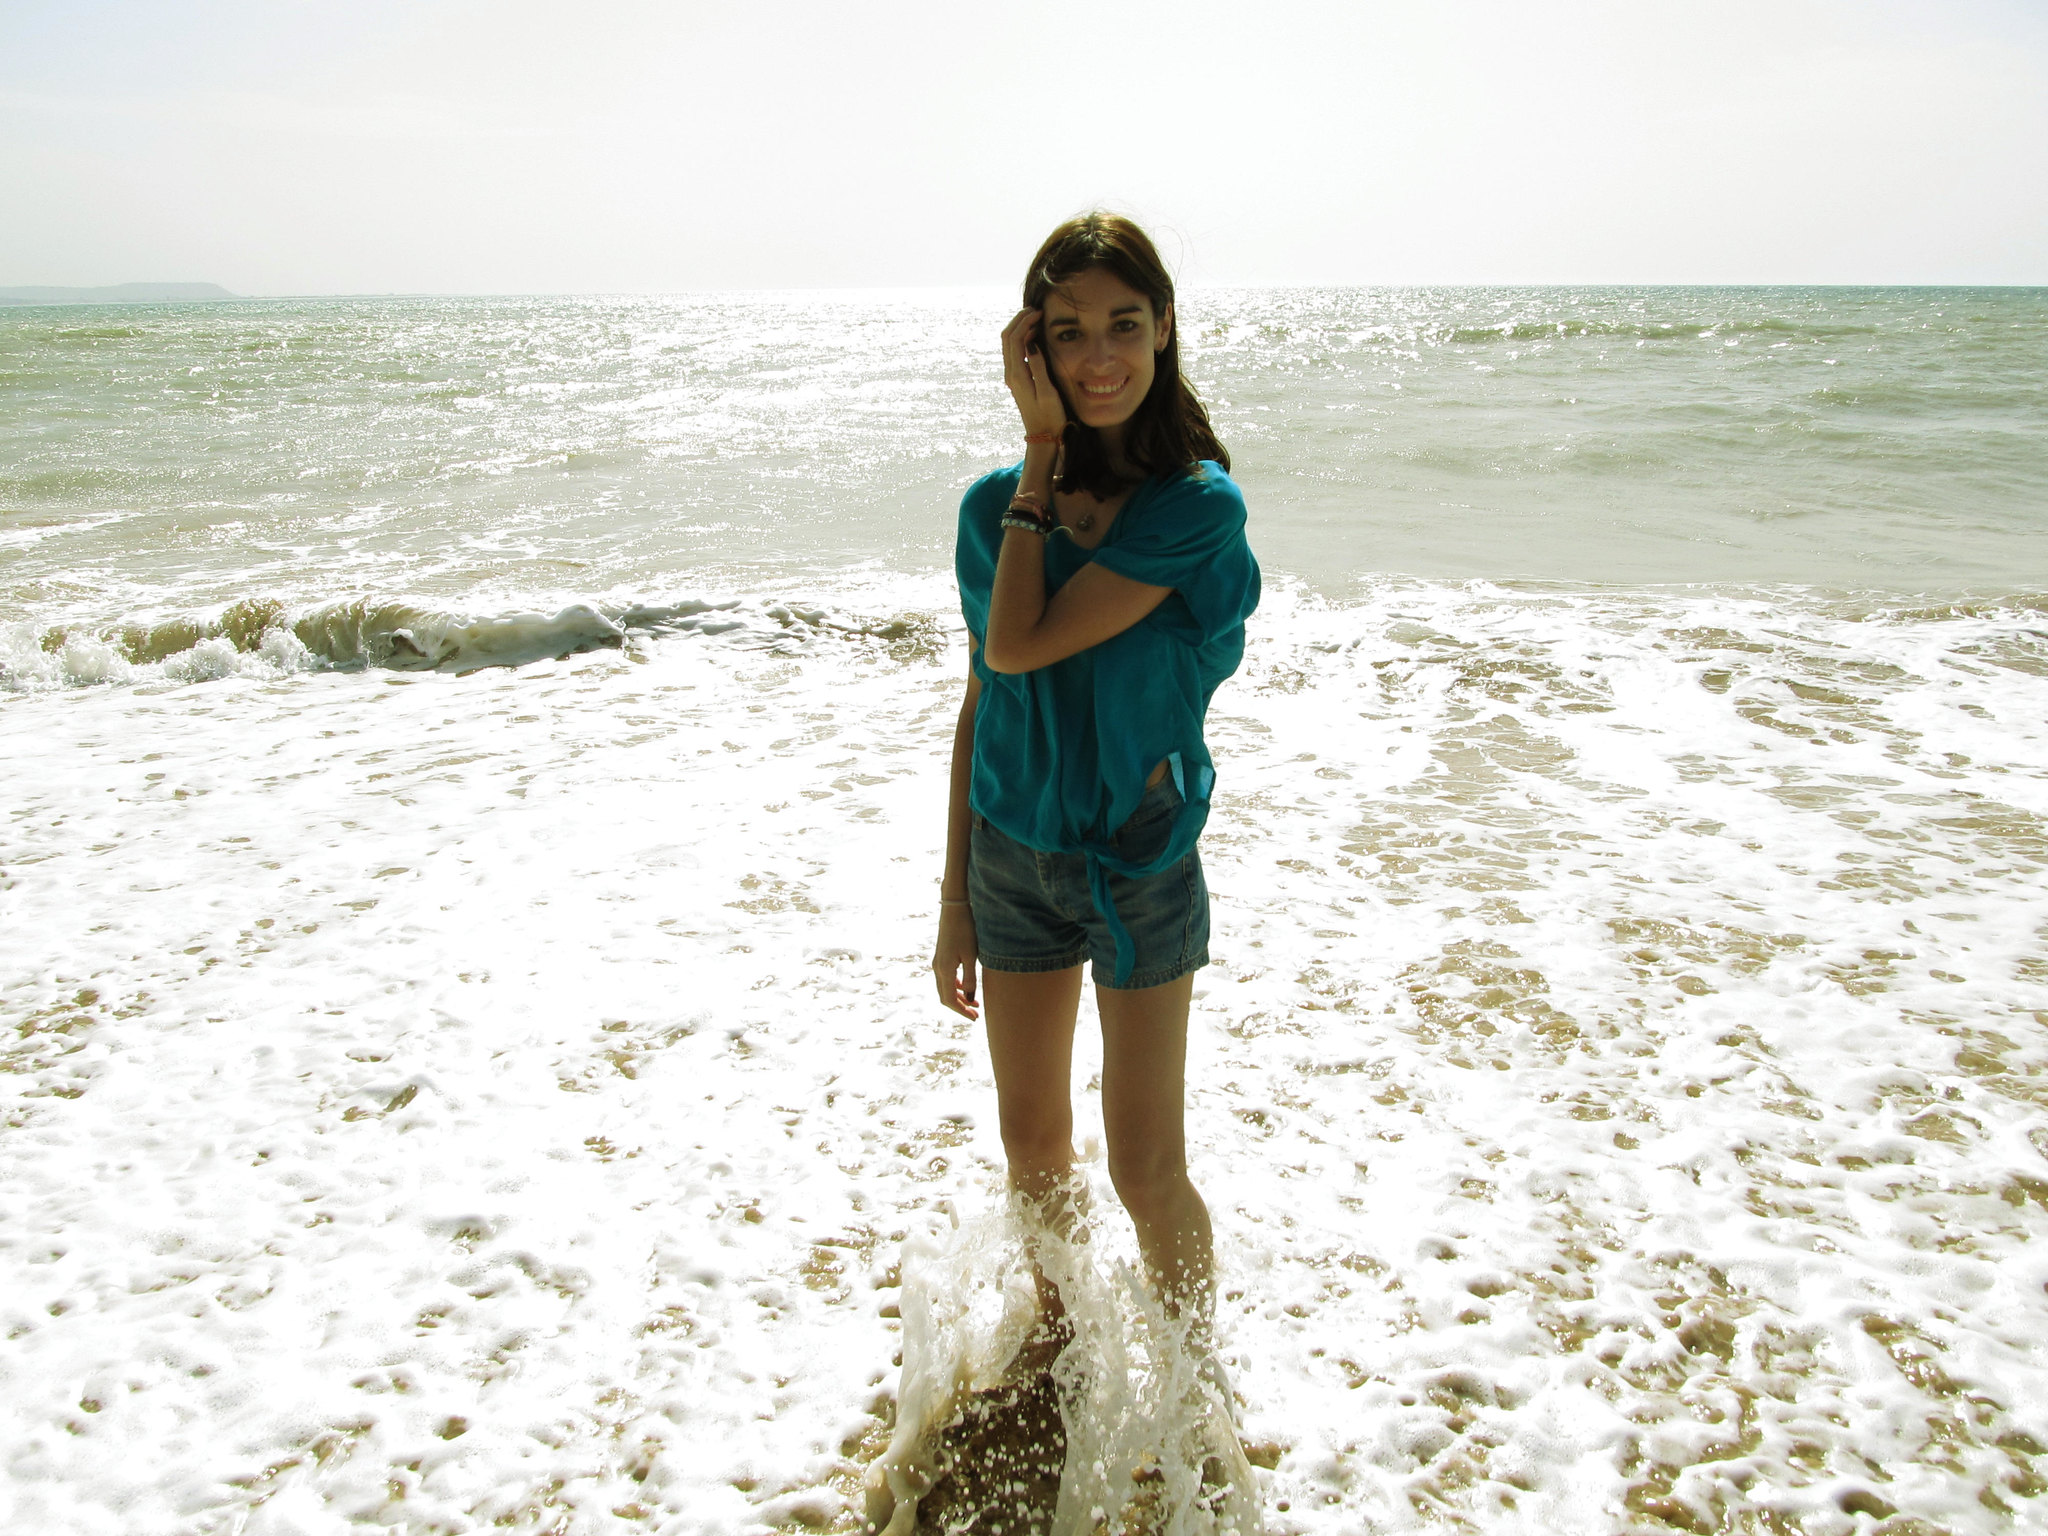 Une jeune femme sourit alors qu'elle se trouve dans l'eau sur une plage | Source : Flickr